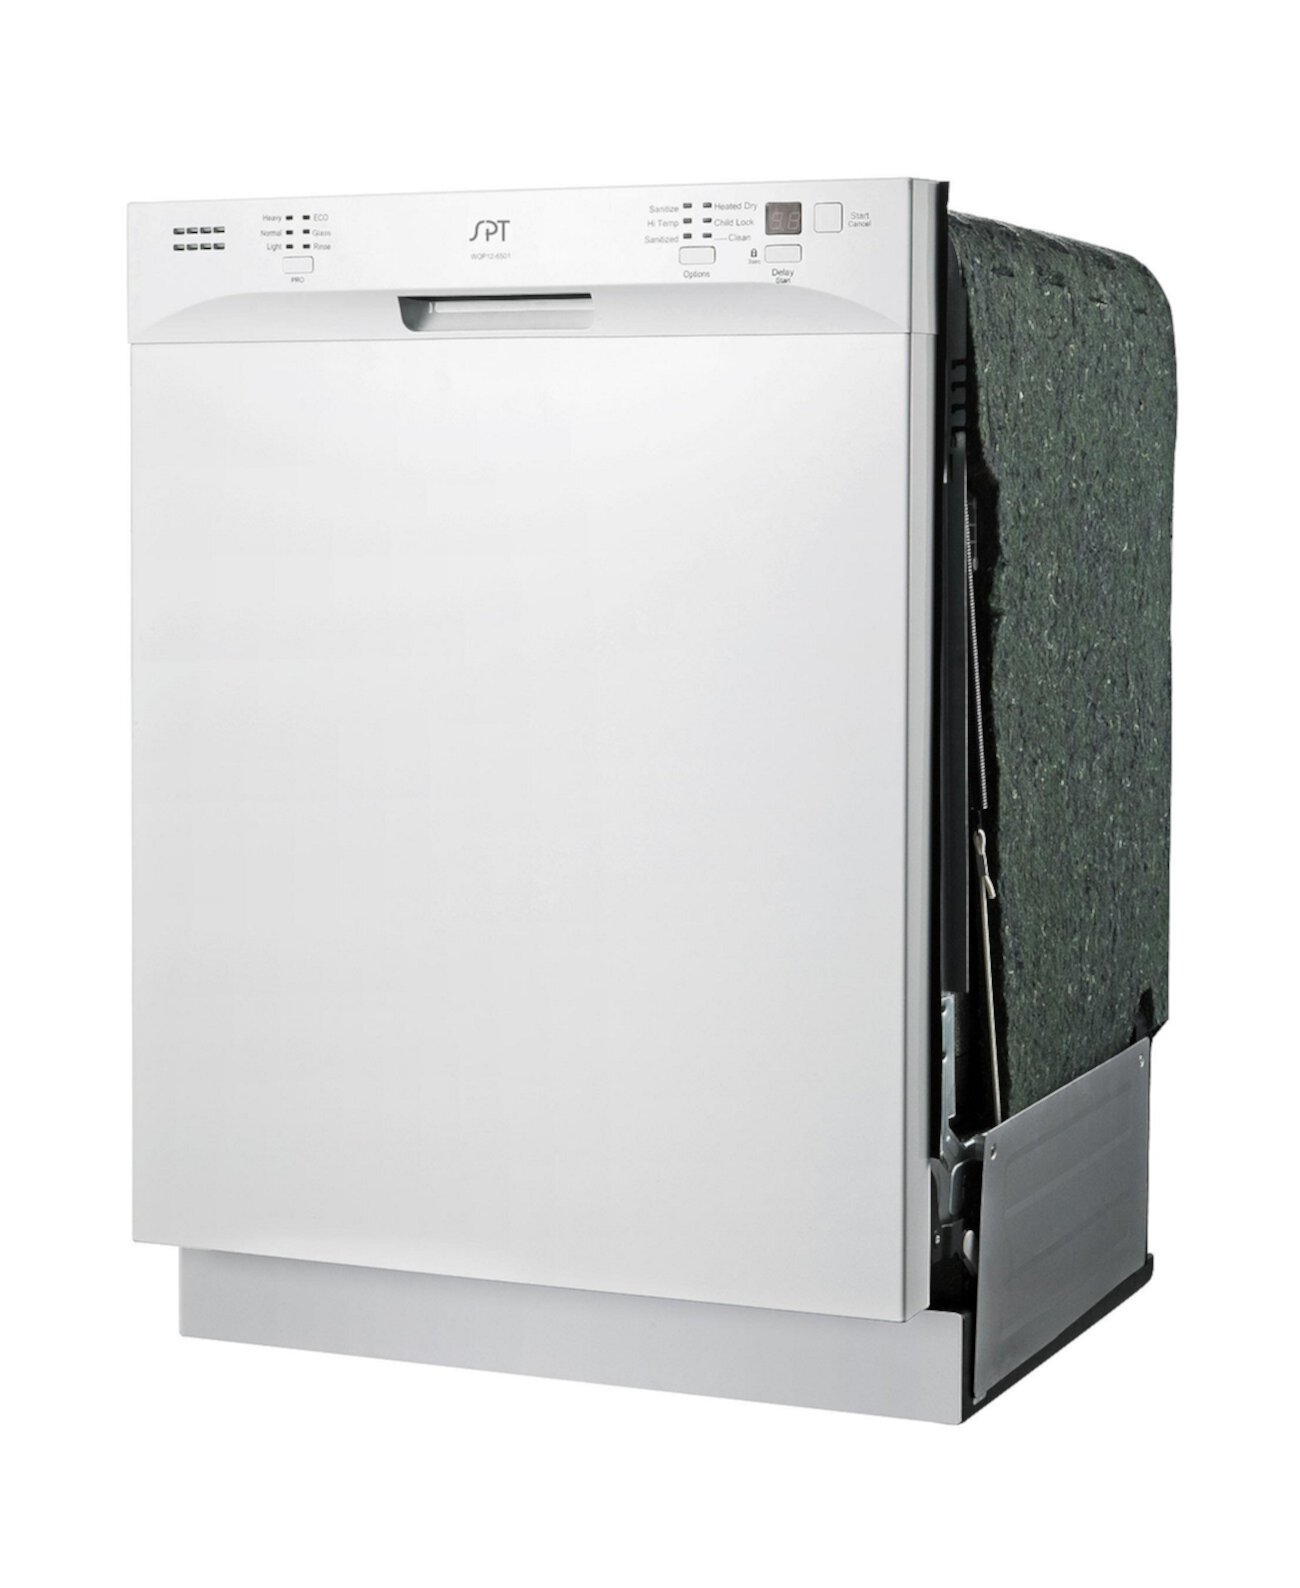 Energy Star 24-дюймовая встраиваемая посудомоечная машина с высокой ванной из нержавеющей стали с подогревом сушки SPT Appliance Inc.